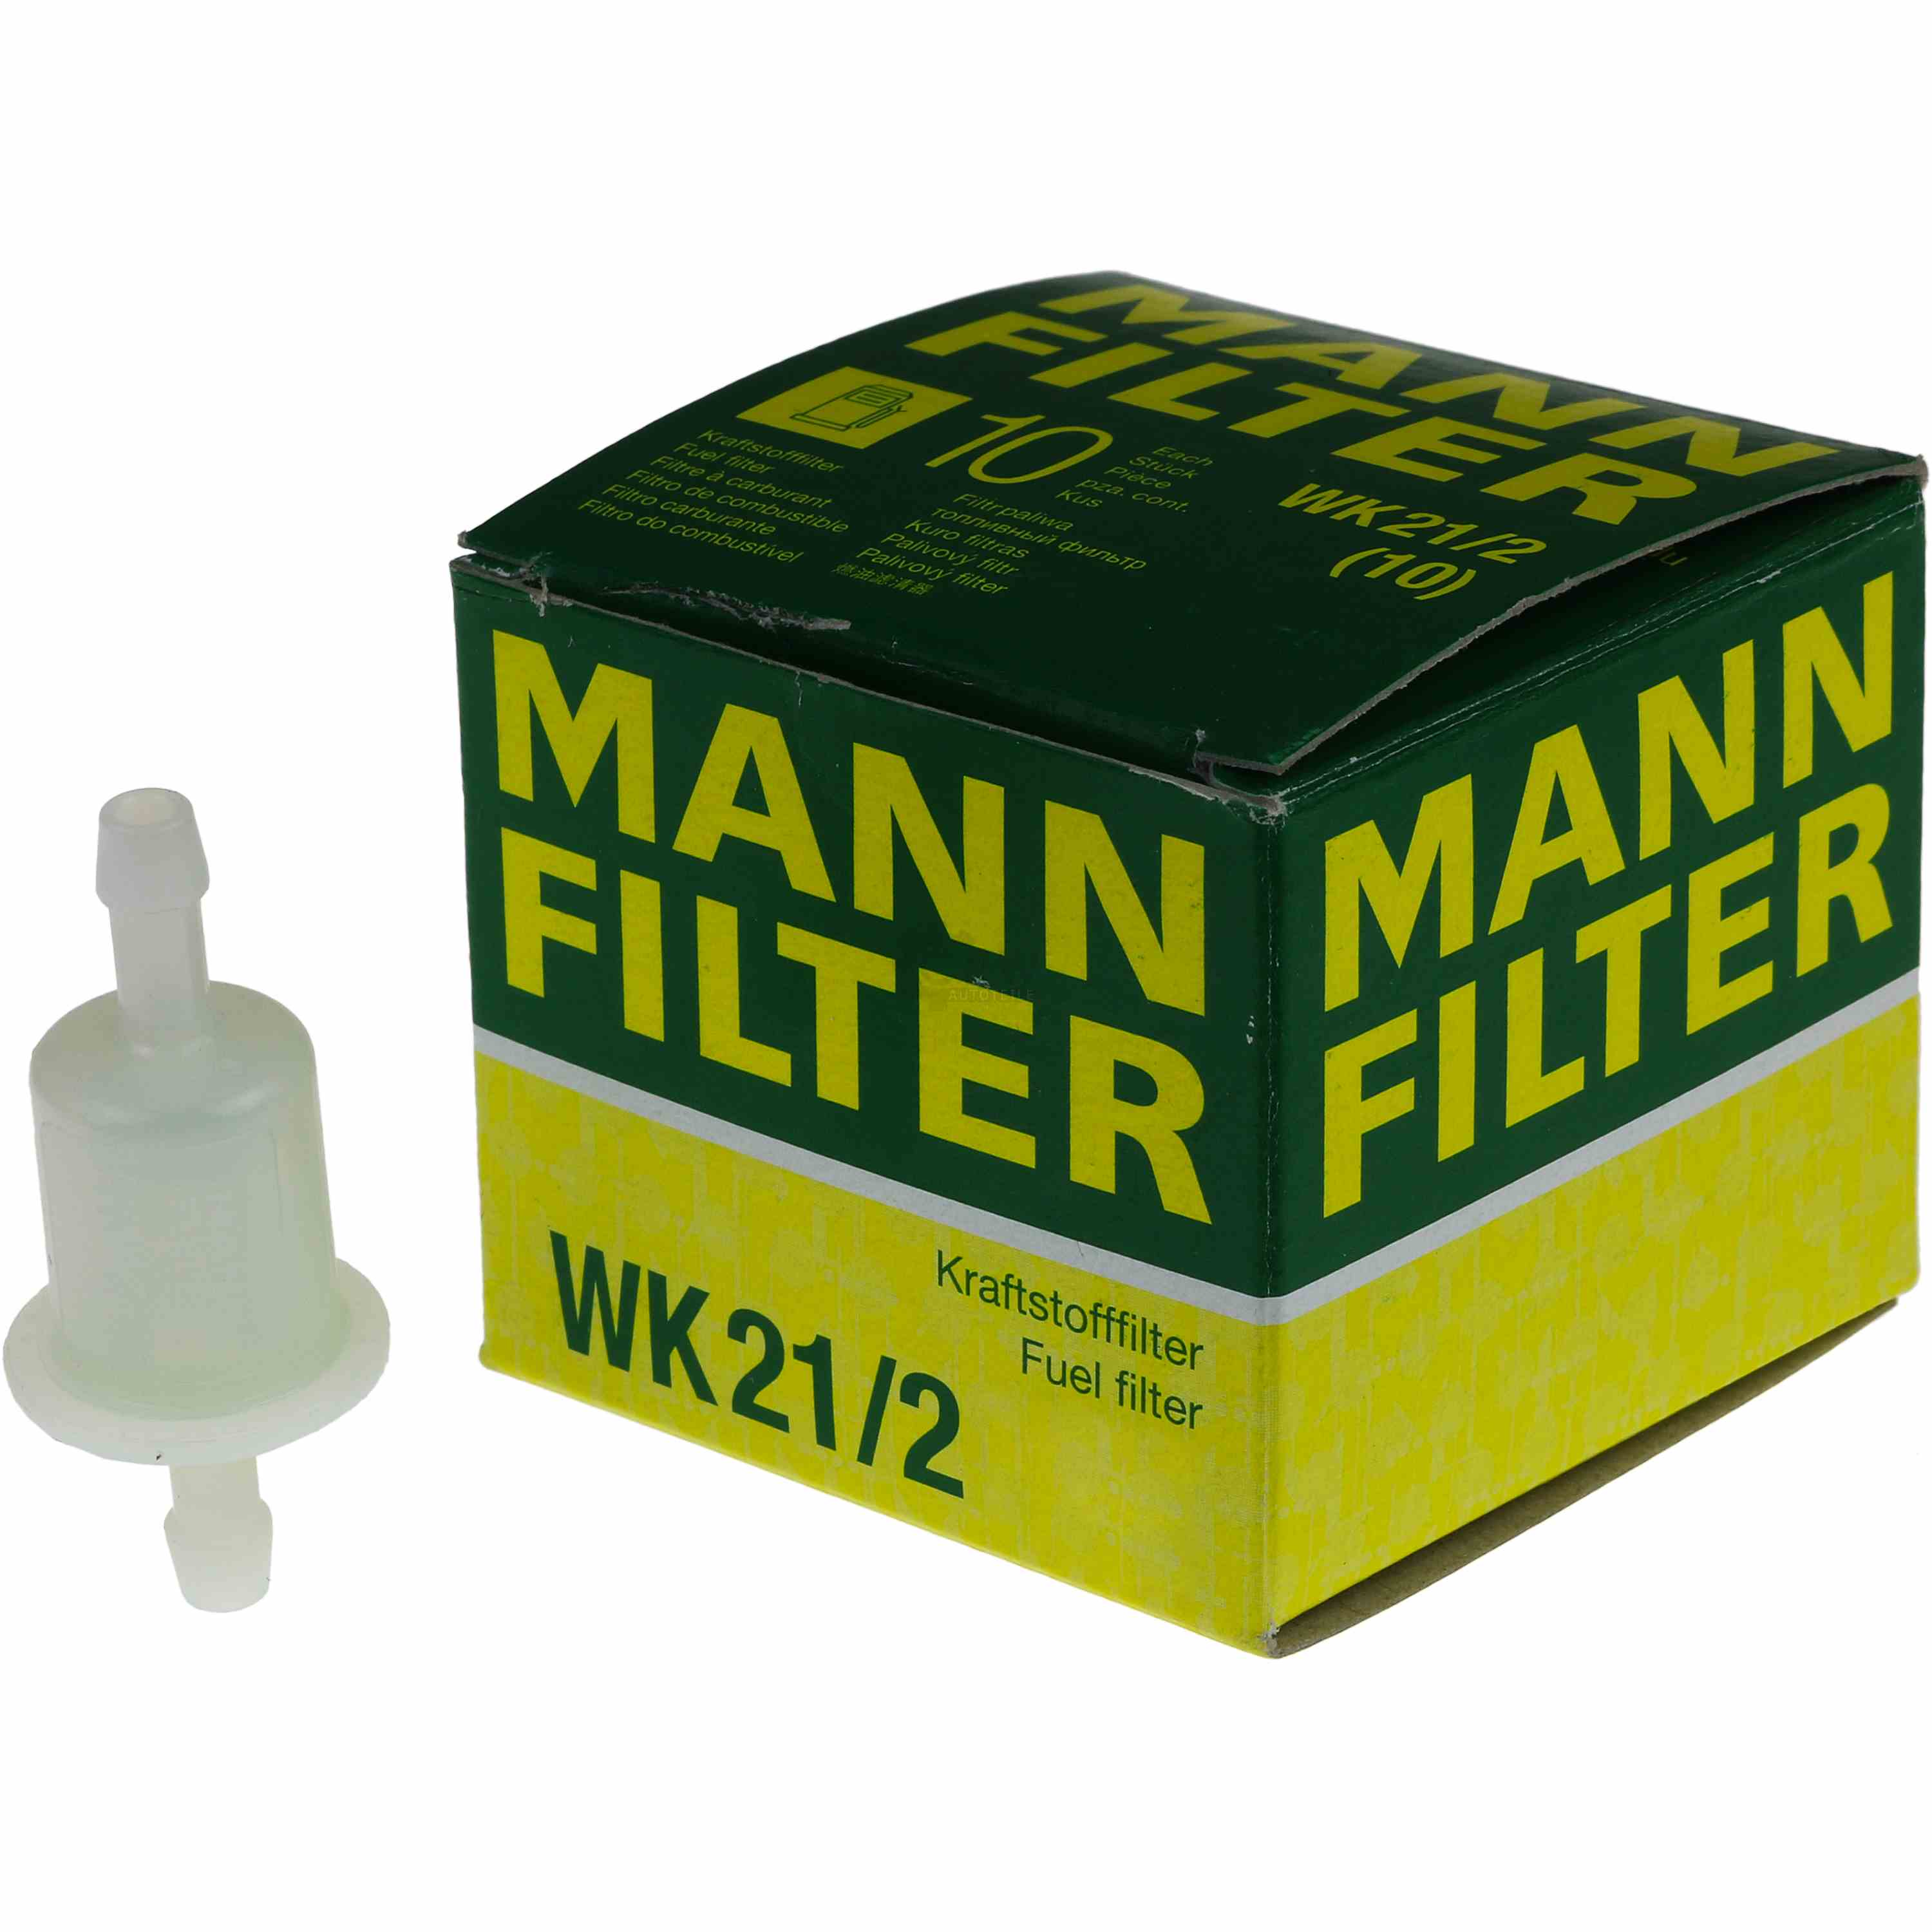 MANN FILTER Kraftstofffilter Fuel Filter WK 21/2